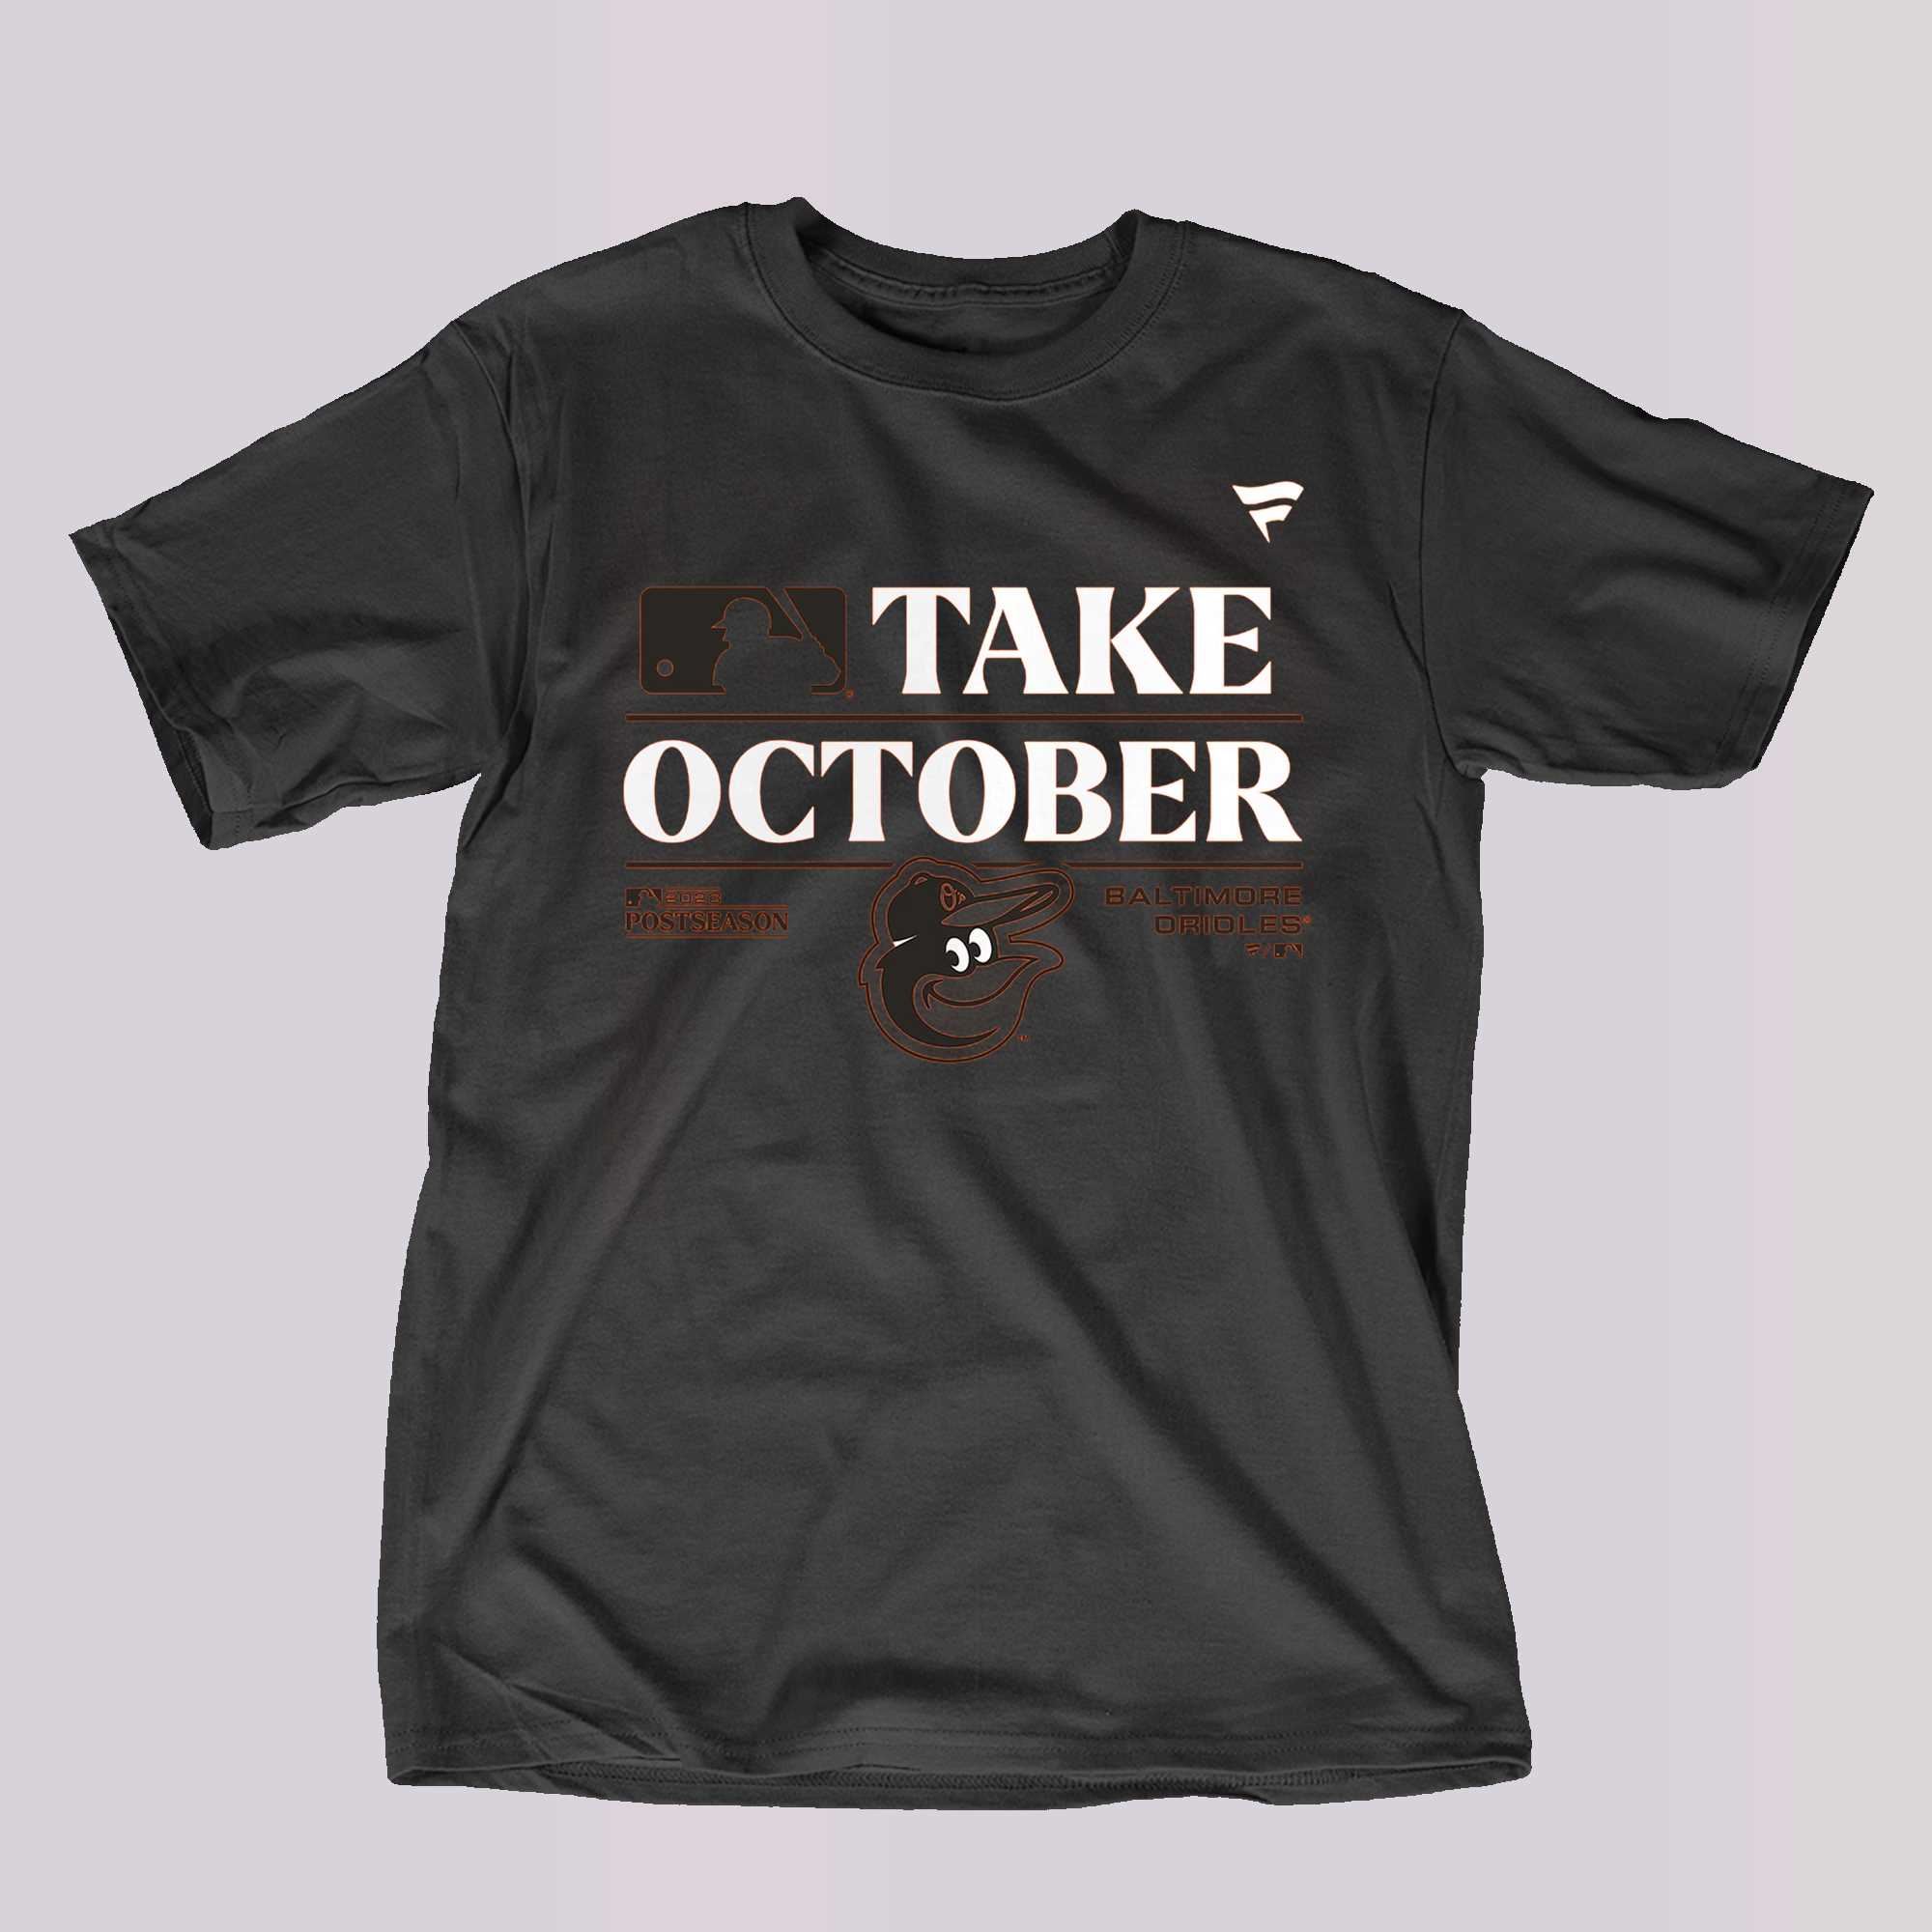 Men's Nike Black Baltimore Orioles Fashion Over Shoulder Logo Legend T-Shirt